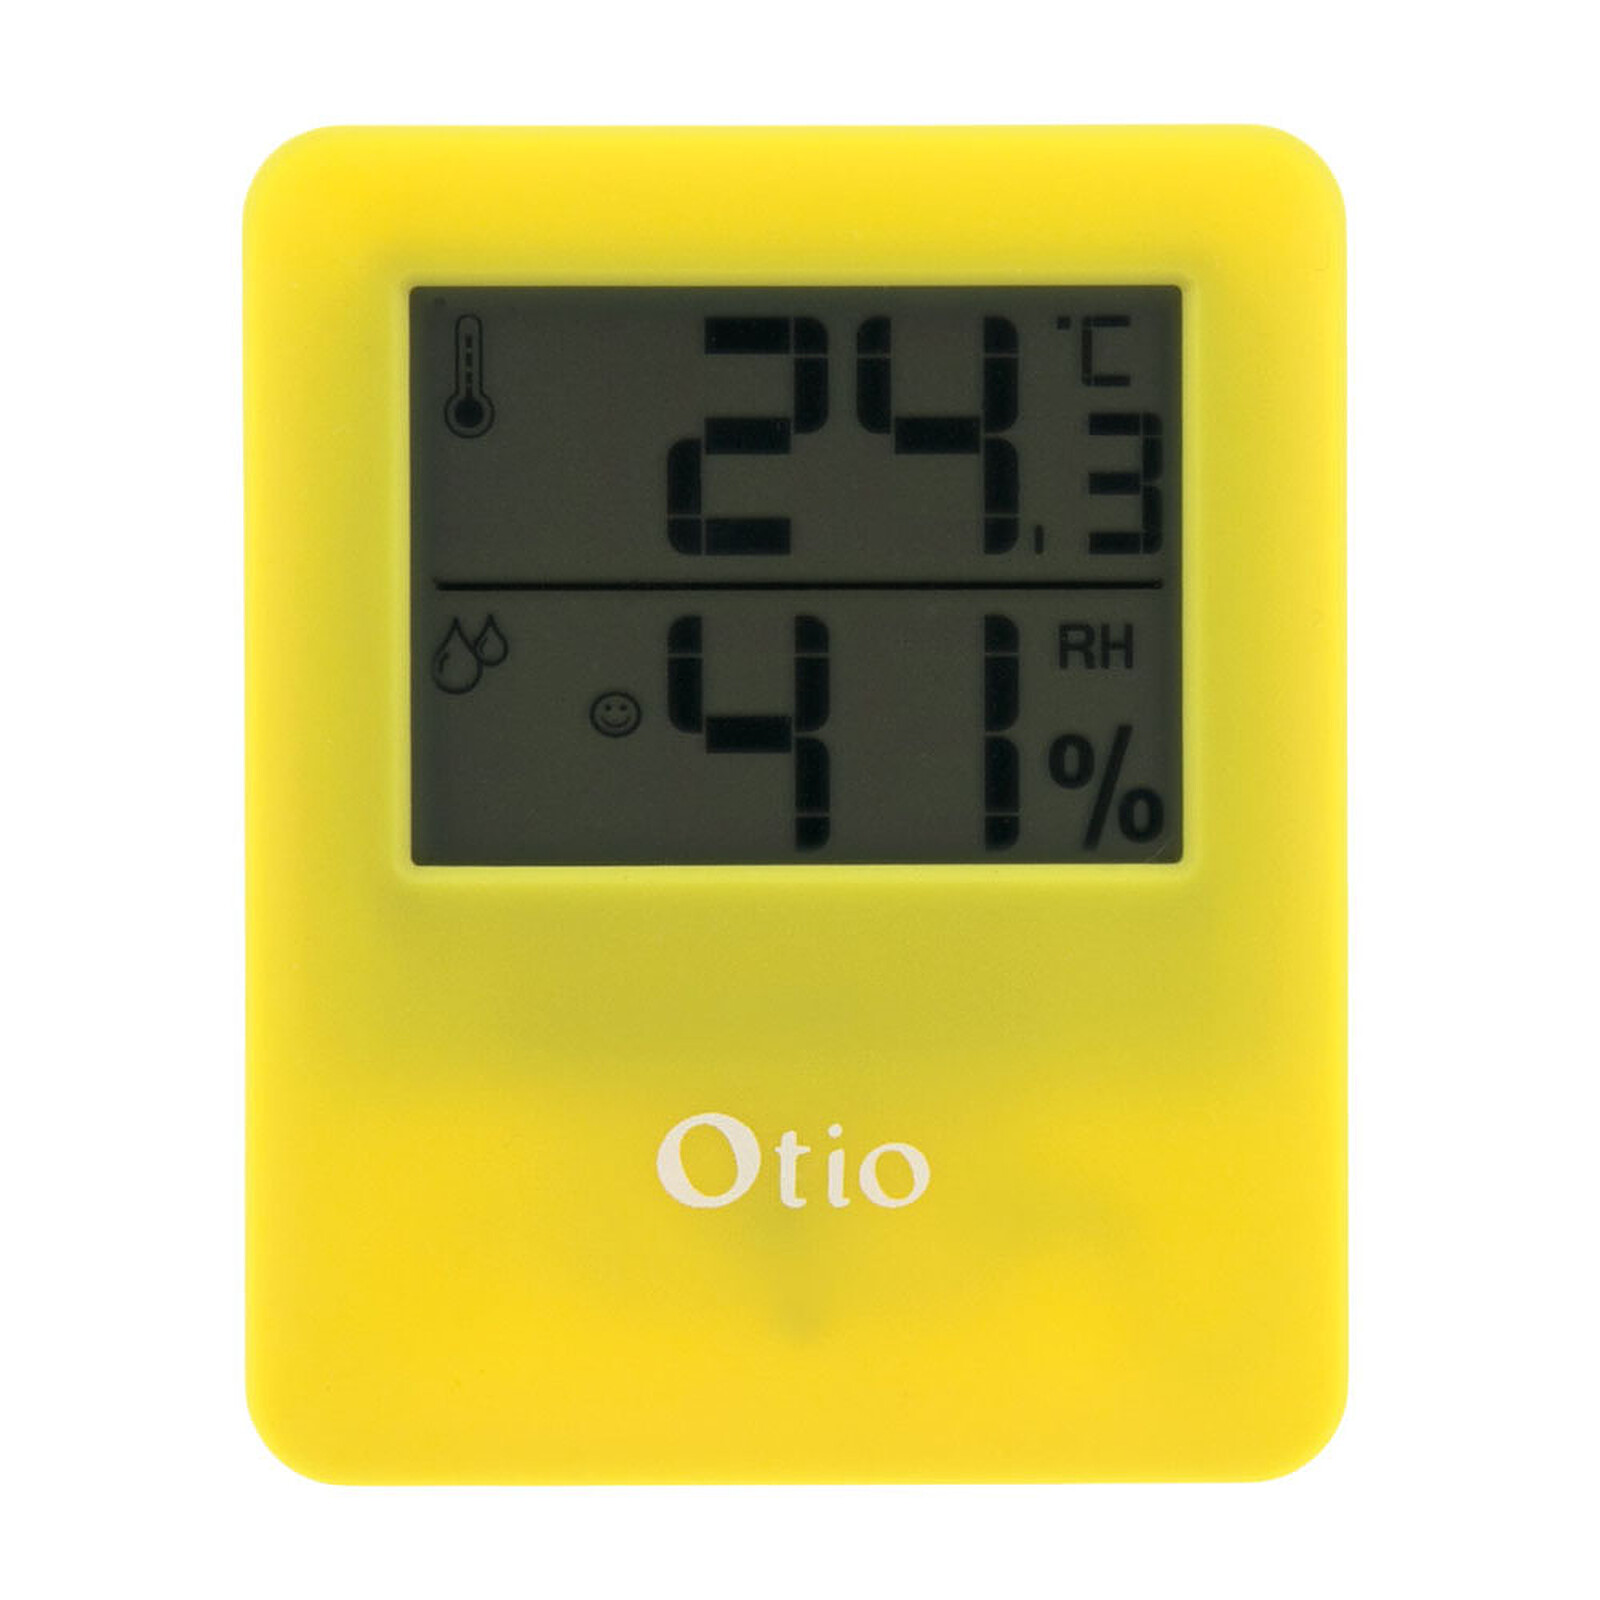 Thermomètre intérieur / Extérieur filaire Noir - Otio - Station Météo - LDLC